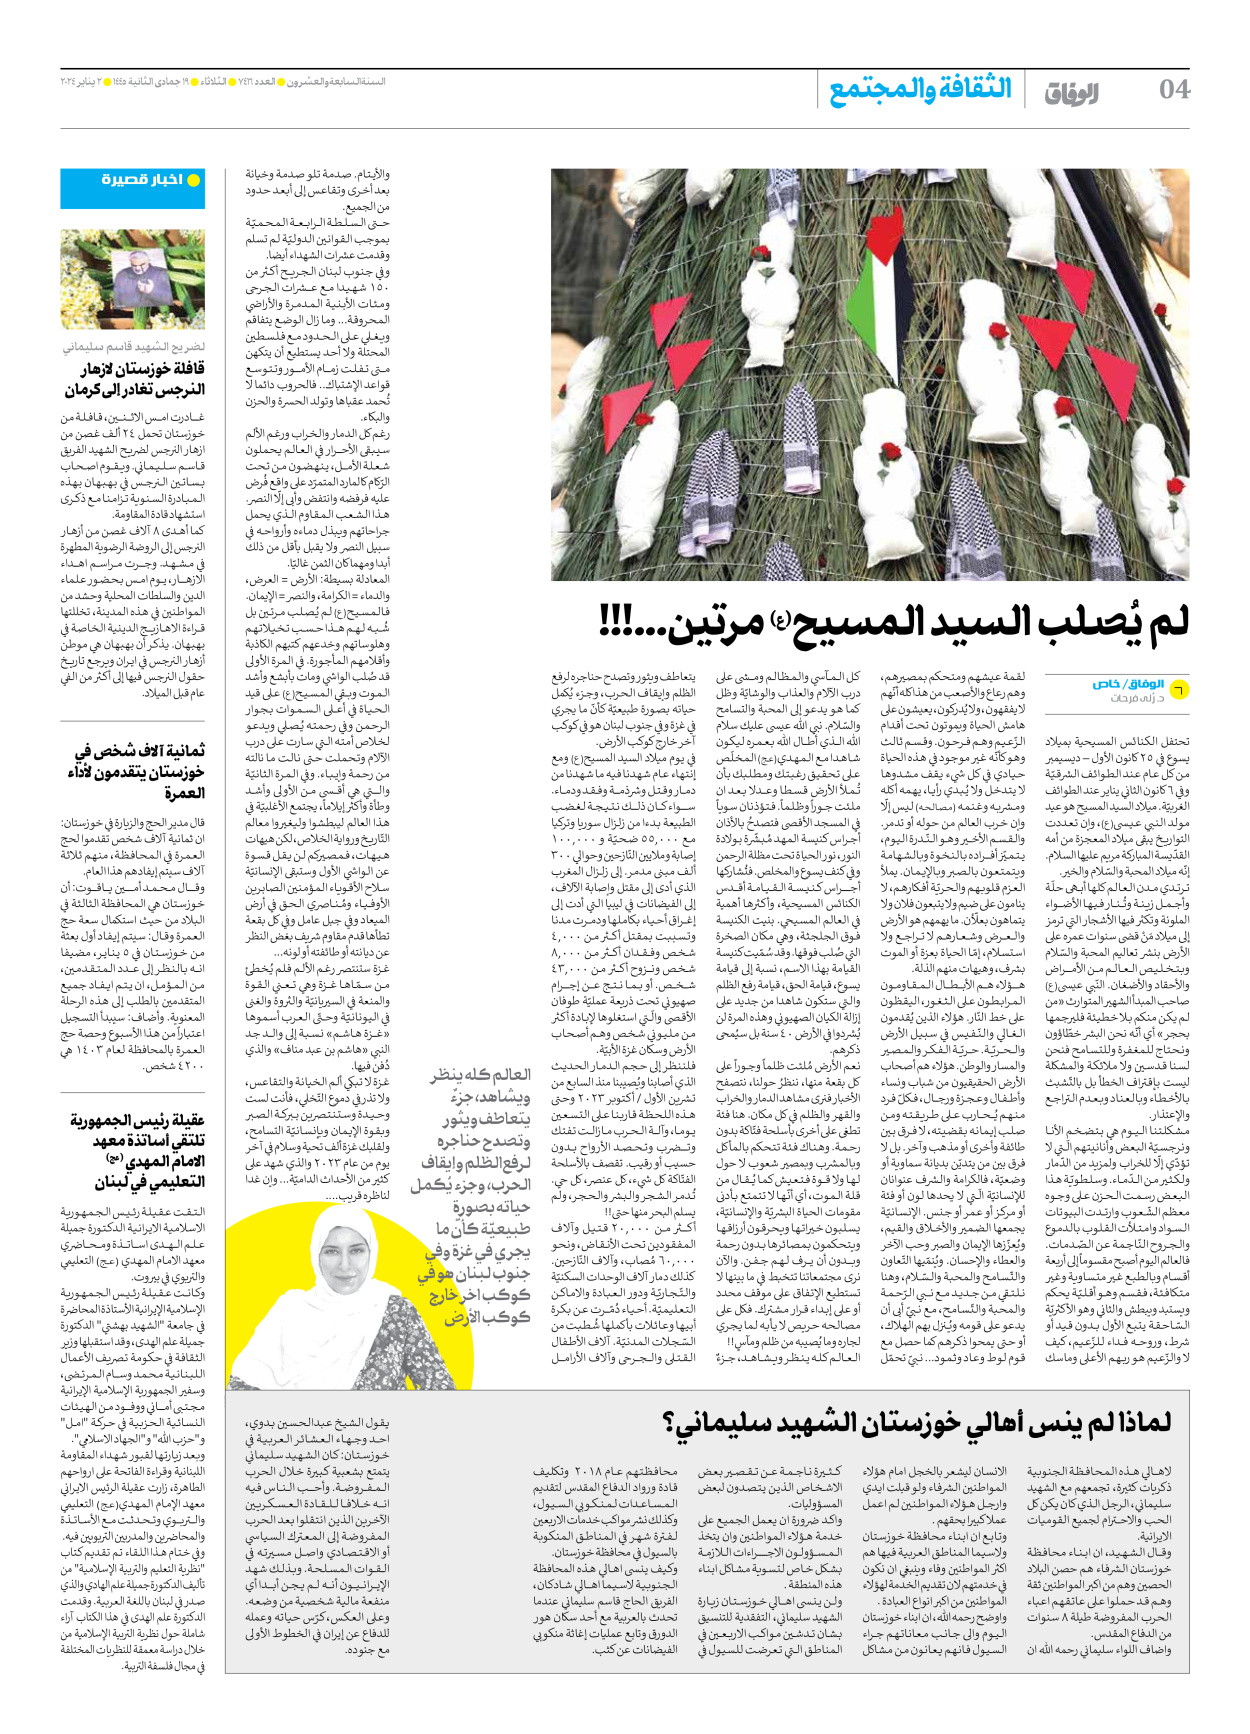 صحیفة ایران الدولیة الوفاق - العدد سبعة آلاف وأربعمائة وستة عشر - ٠٢ يناير ٢٠٢٤ - الصفحة ٤